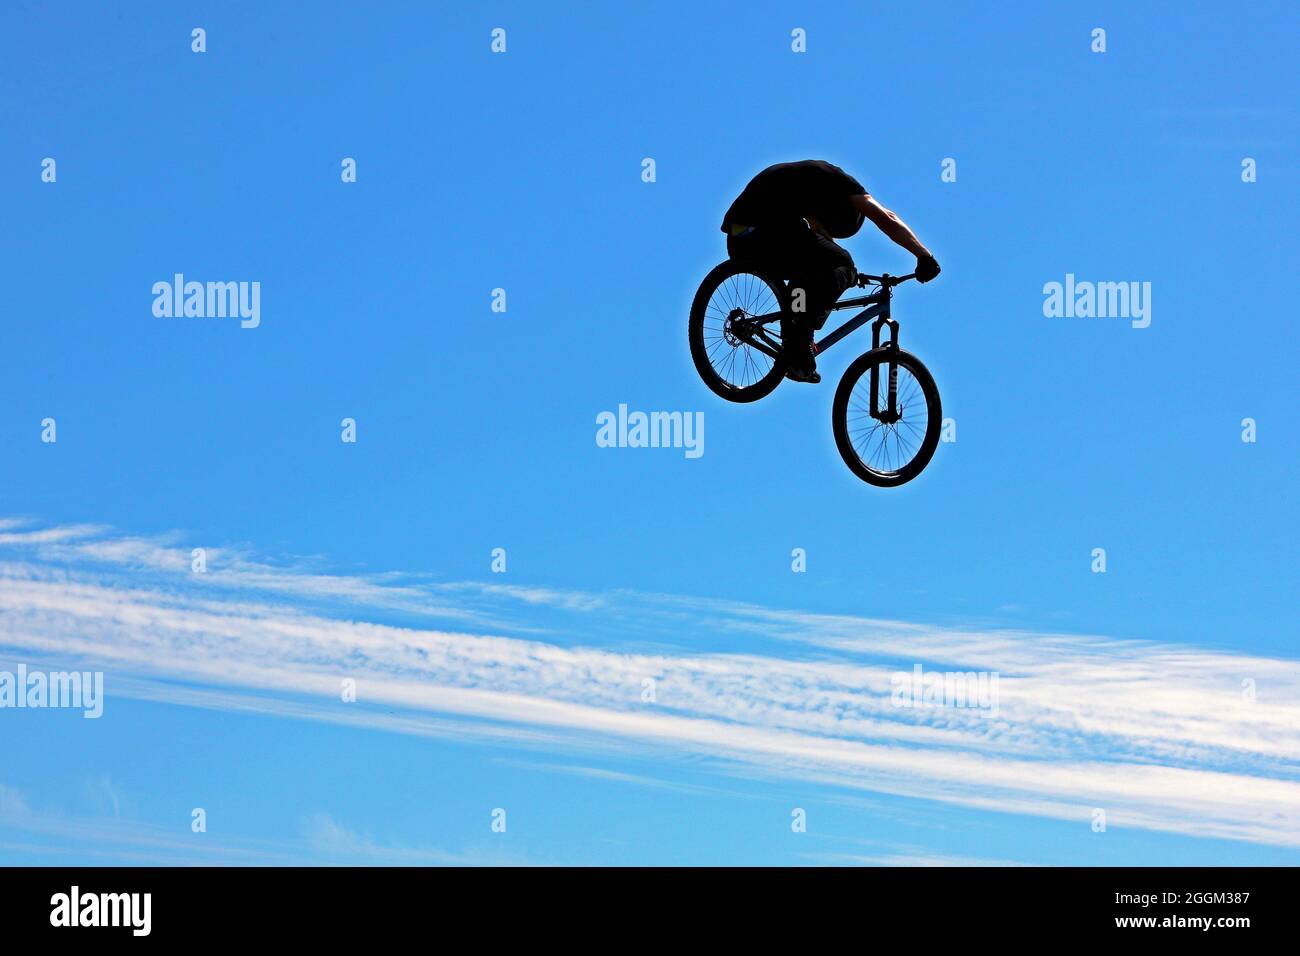 Silhouette de BMX ou de motard de montagne en hauteur lors d'un spectacle de cascades, dans un ciel principalement bleu clair avec une bande de nuages blancs Banque D'Images